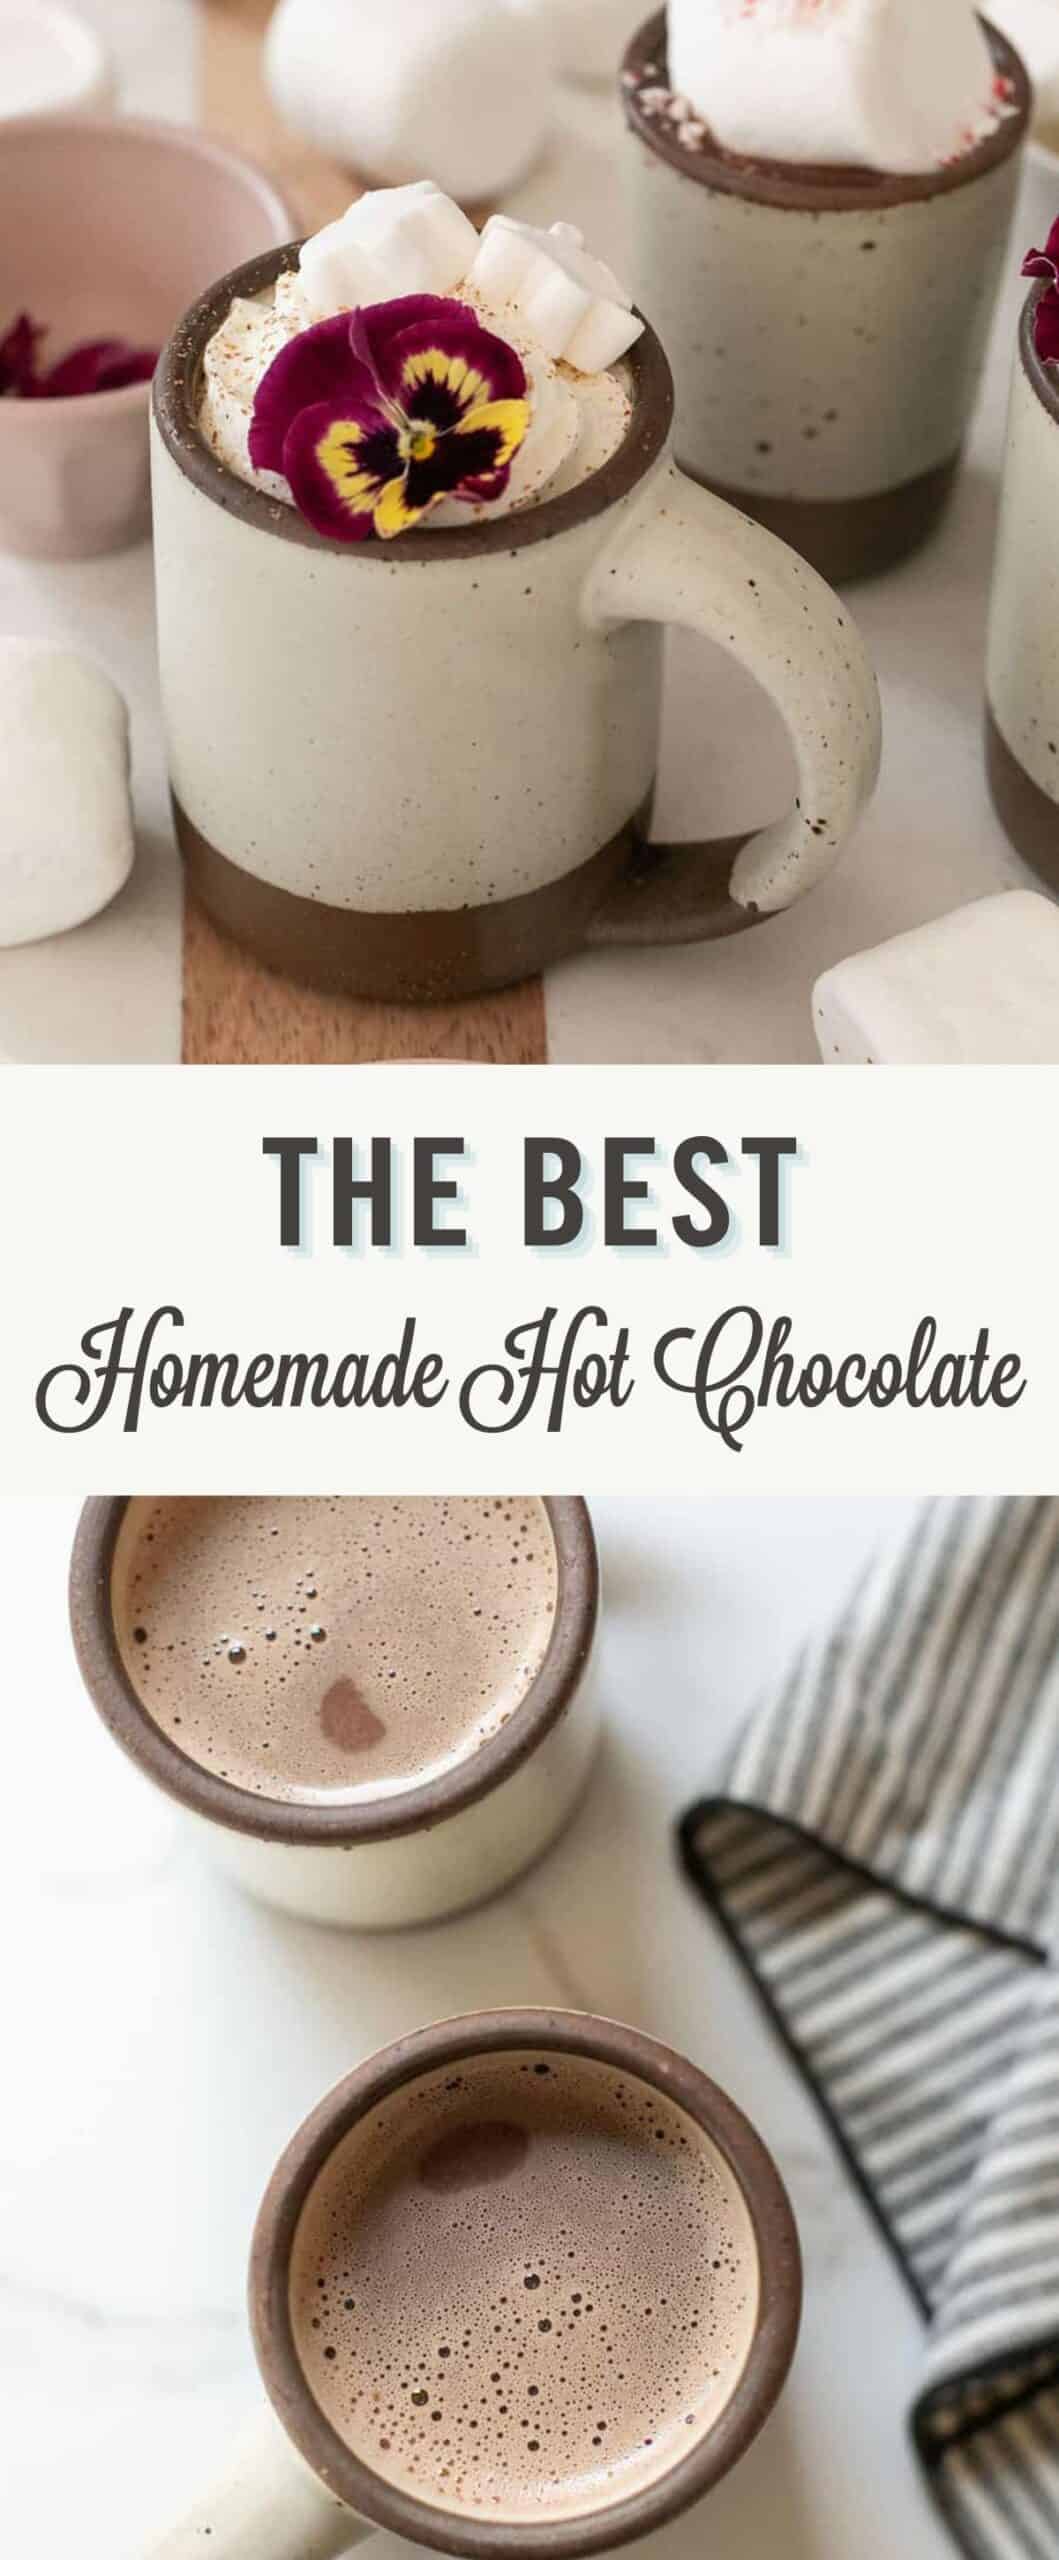 Homemade hot chocolate recipe.